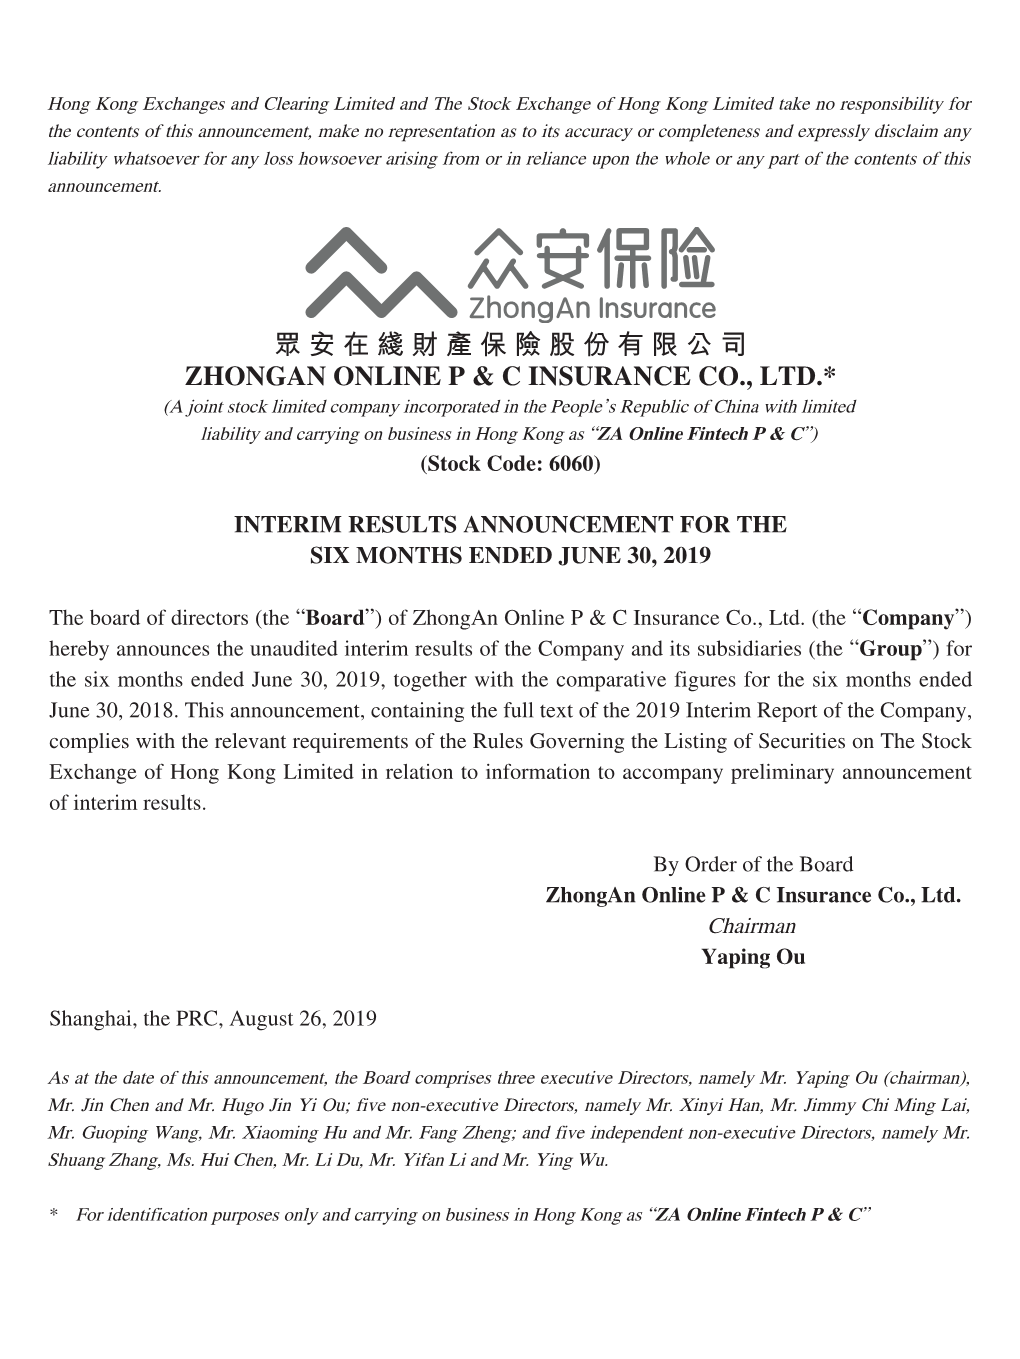 眾安在綫財產保險股份有限公司 Zhongan Online P & C Insurance Co., Ltd.*